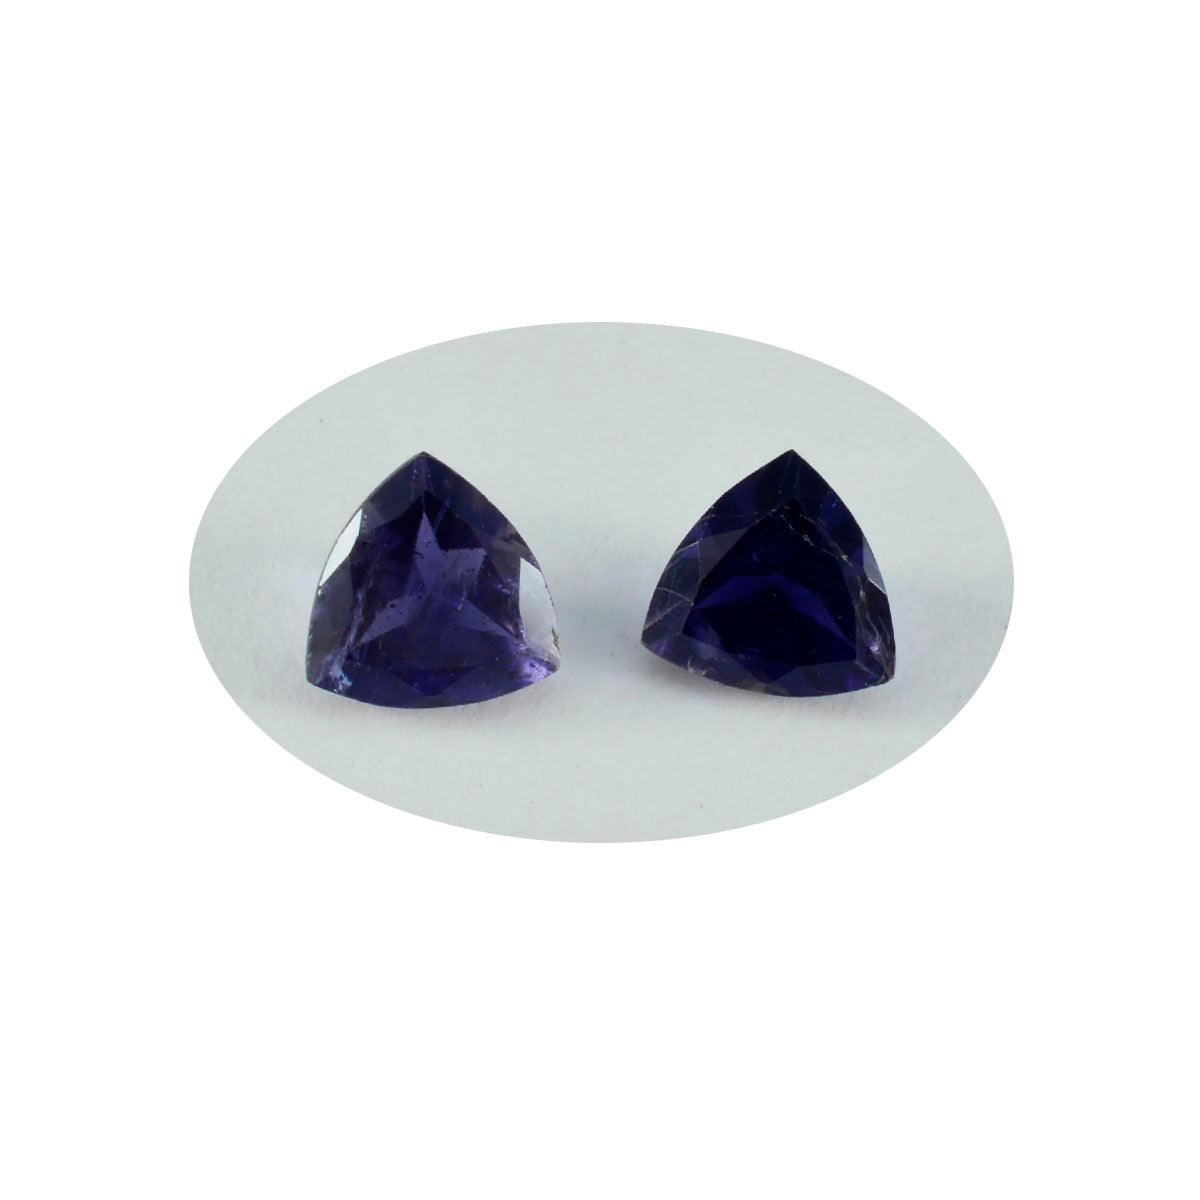 Riyogems 1 pièce d'iolite bleue à facettes 12x12mm en forme de trillion, gemme en vrac de qualité fantastique